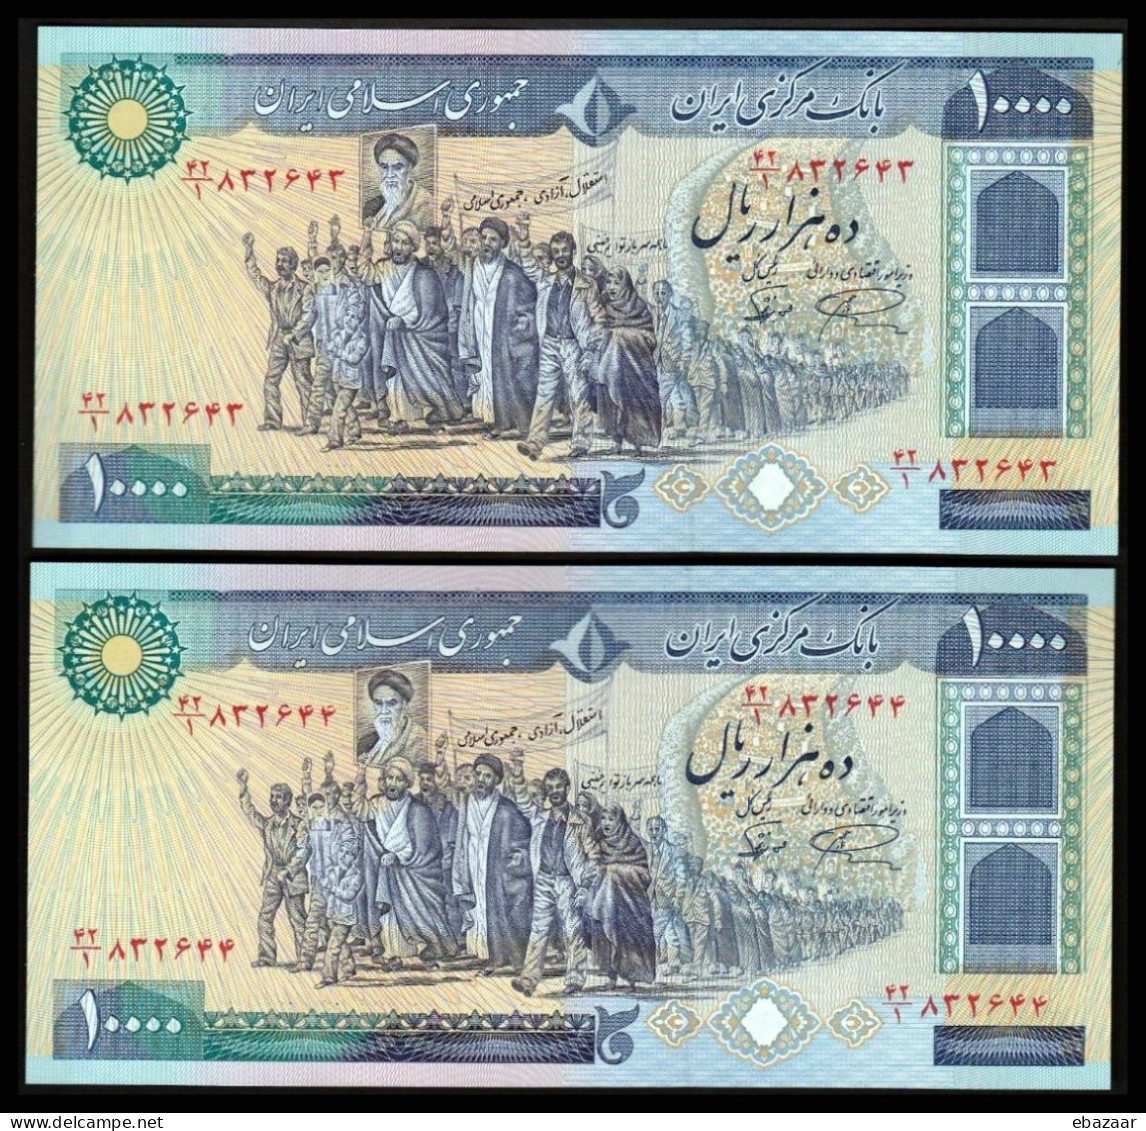 Iran (1981) 10000 Rials 2 Banknotes Consecutive Serial Numbers P-134b UNC - Irán